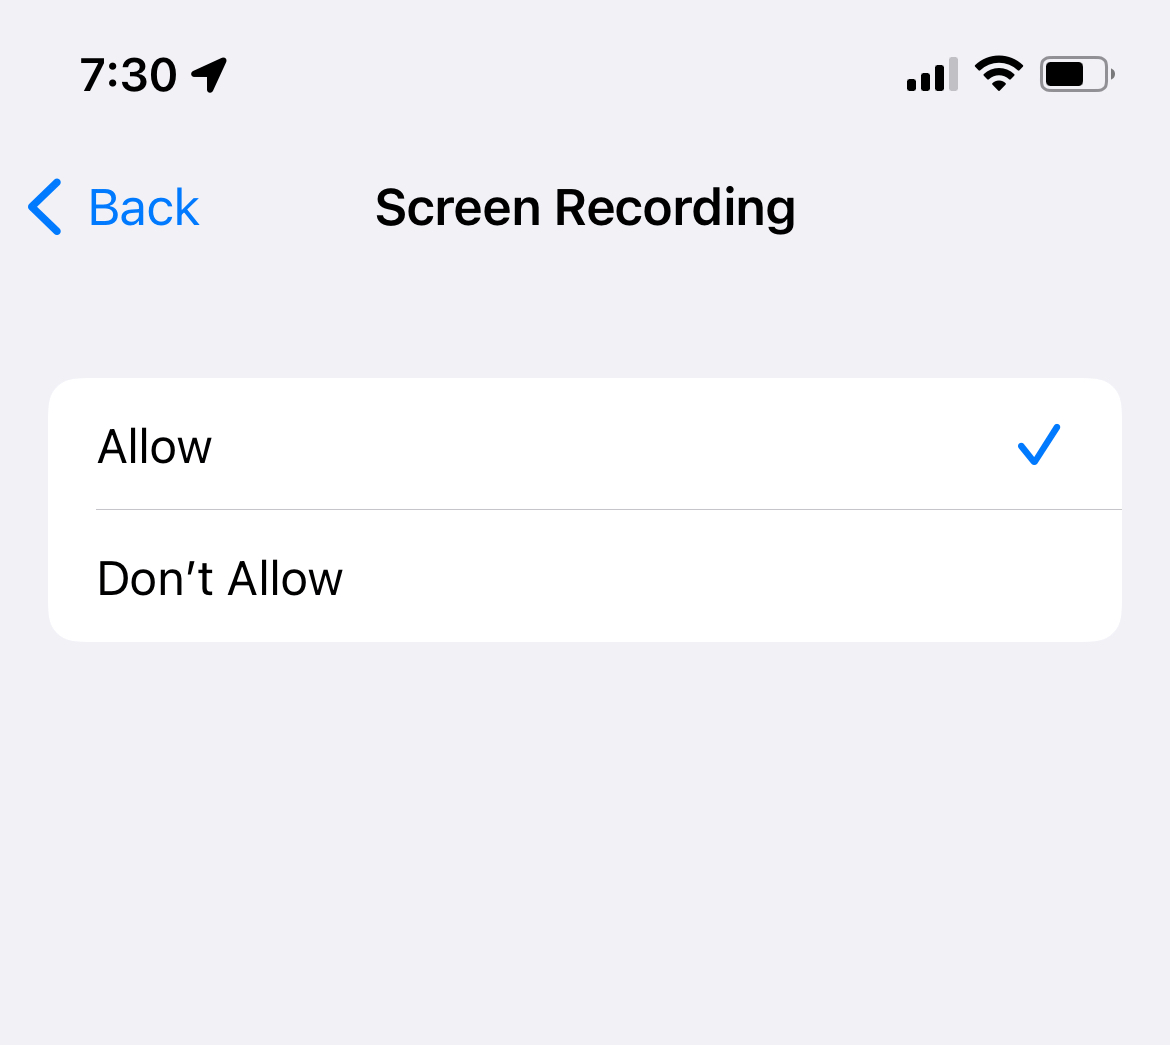 screen recording permission